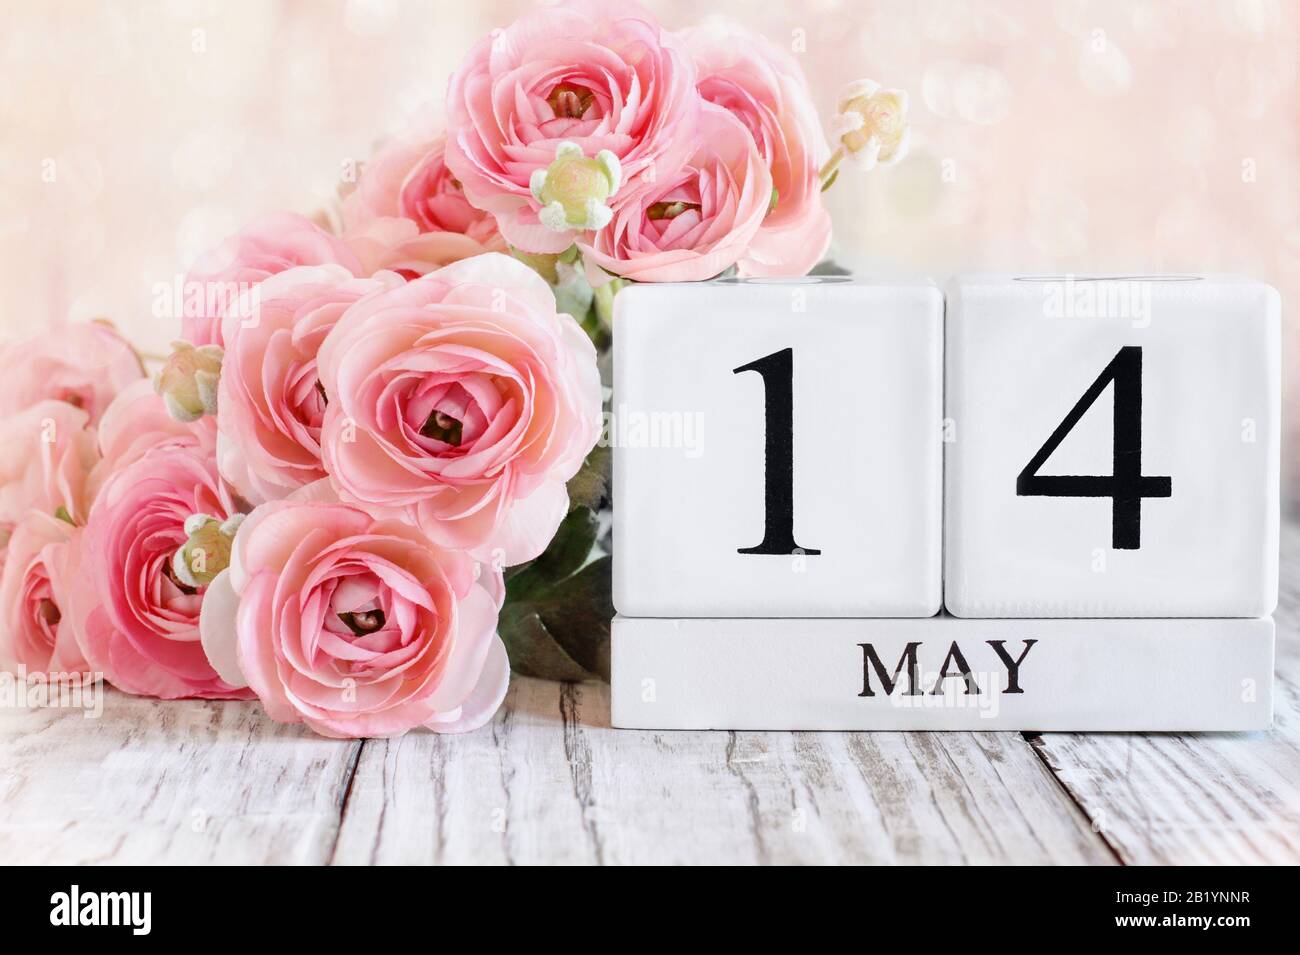 Blocchi calendario in legno bianco con la data maggio 14th e fiori ranunculus rosa su un tavolo in legno. Messa a fuoco selettiva con sfondo sfocato. Foto Stock